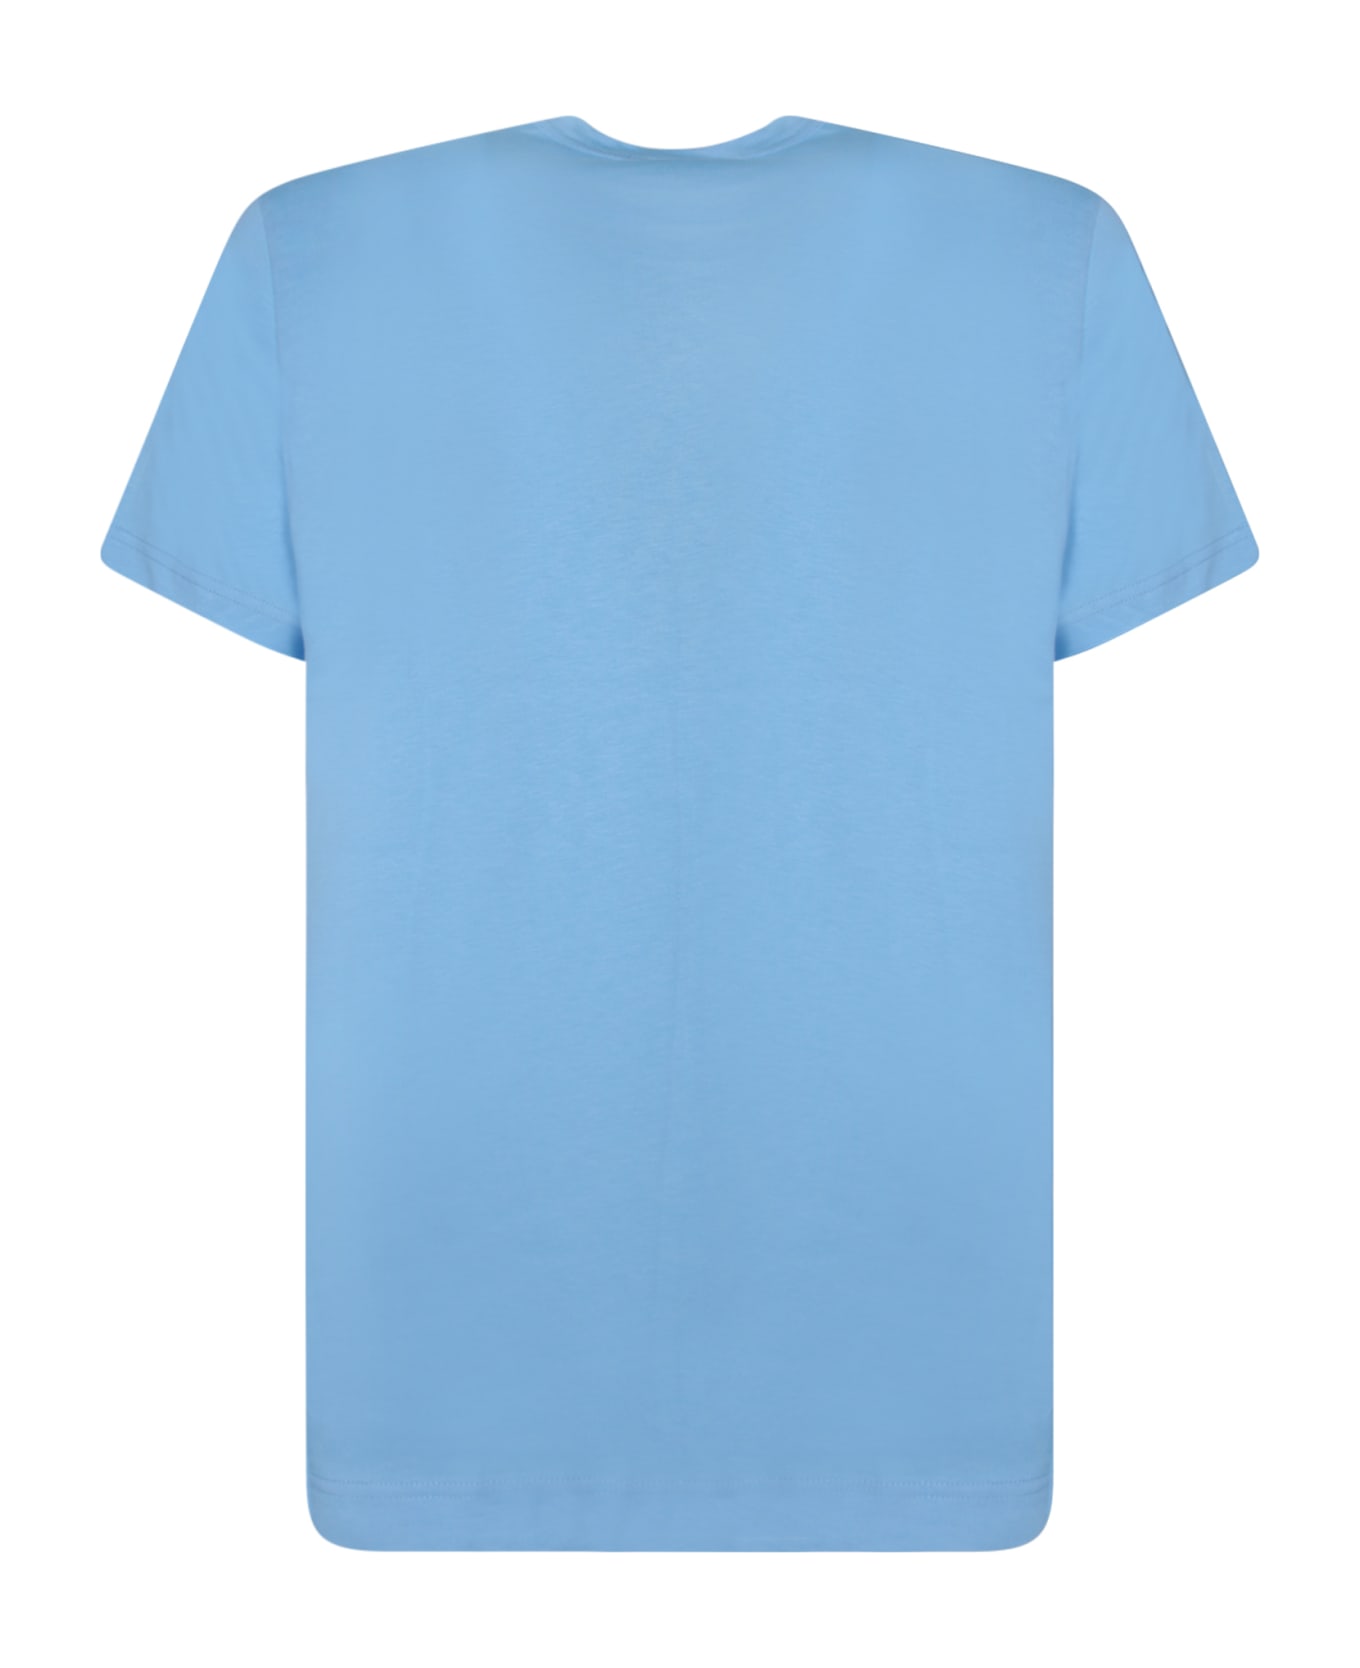 Comme des Garçons Shirt Regular Fit Light Blue T-shirt - Blue シャツ